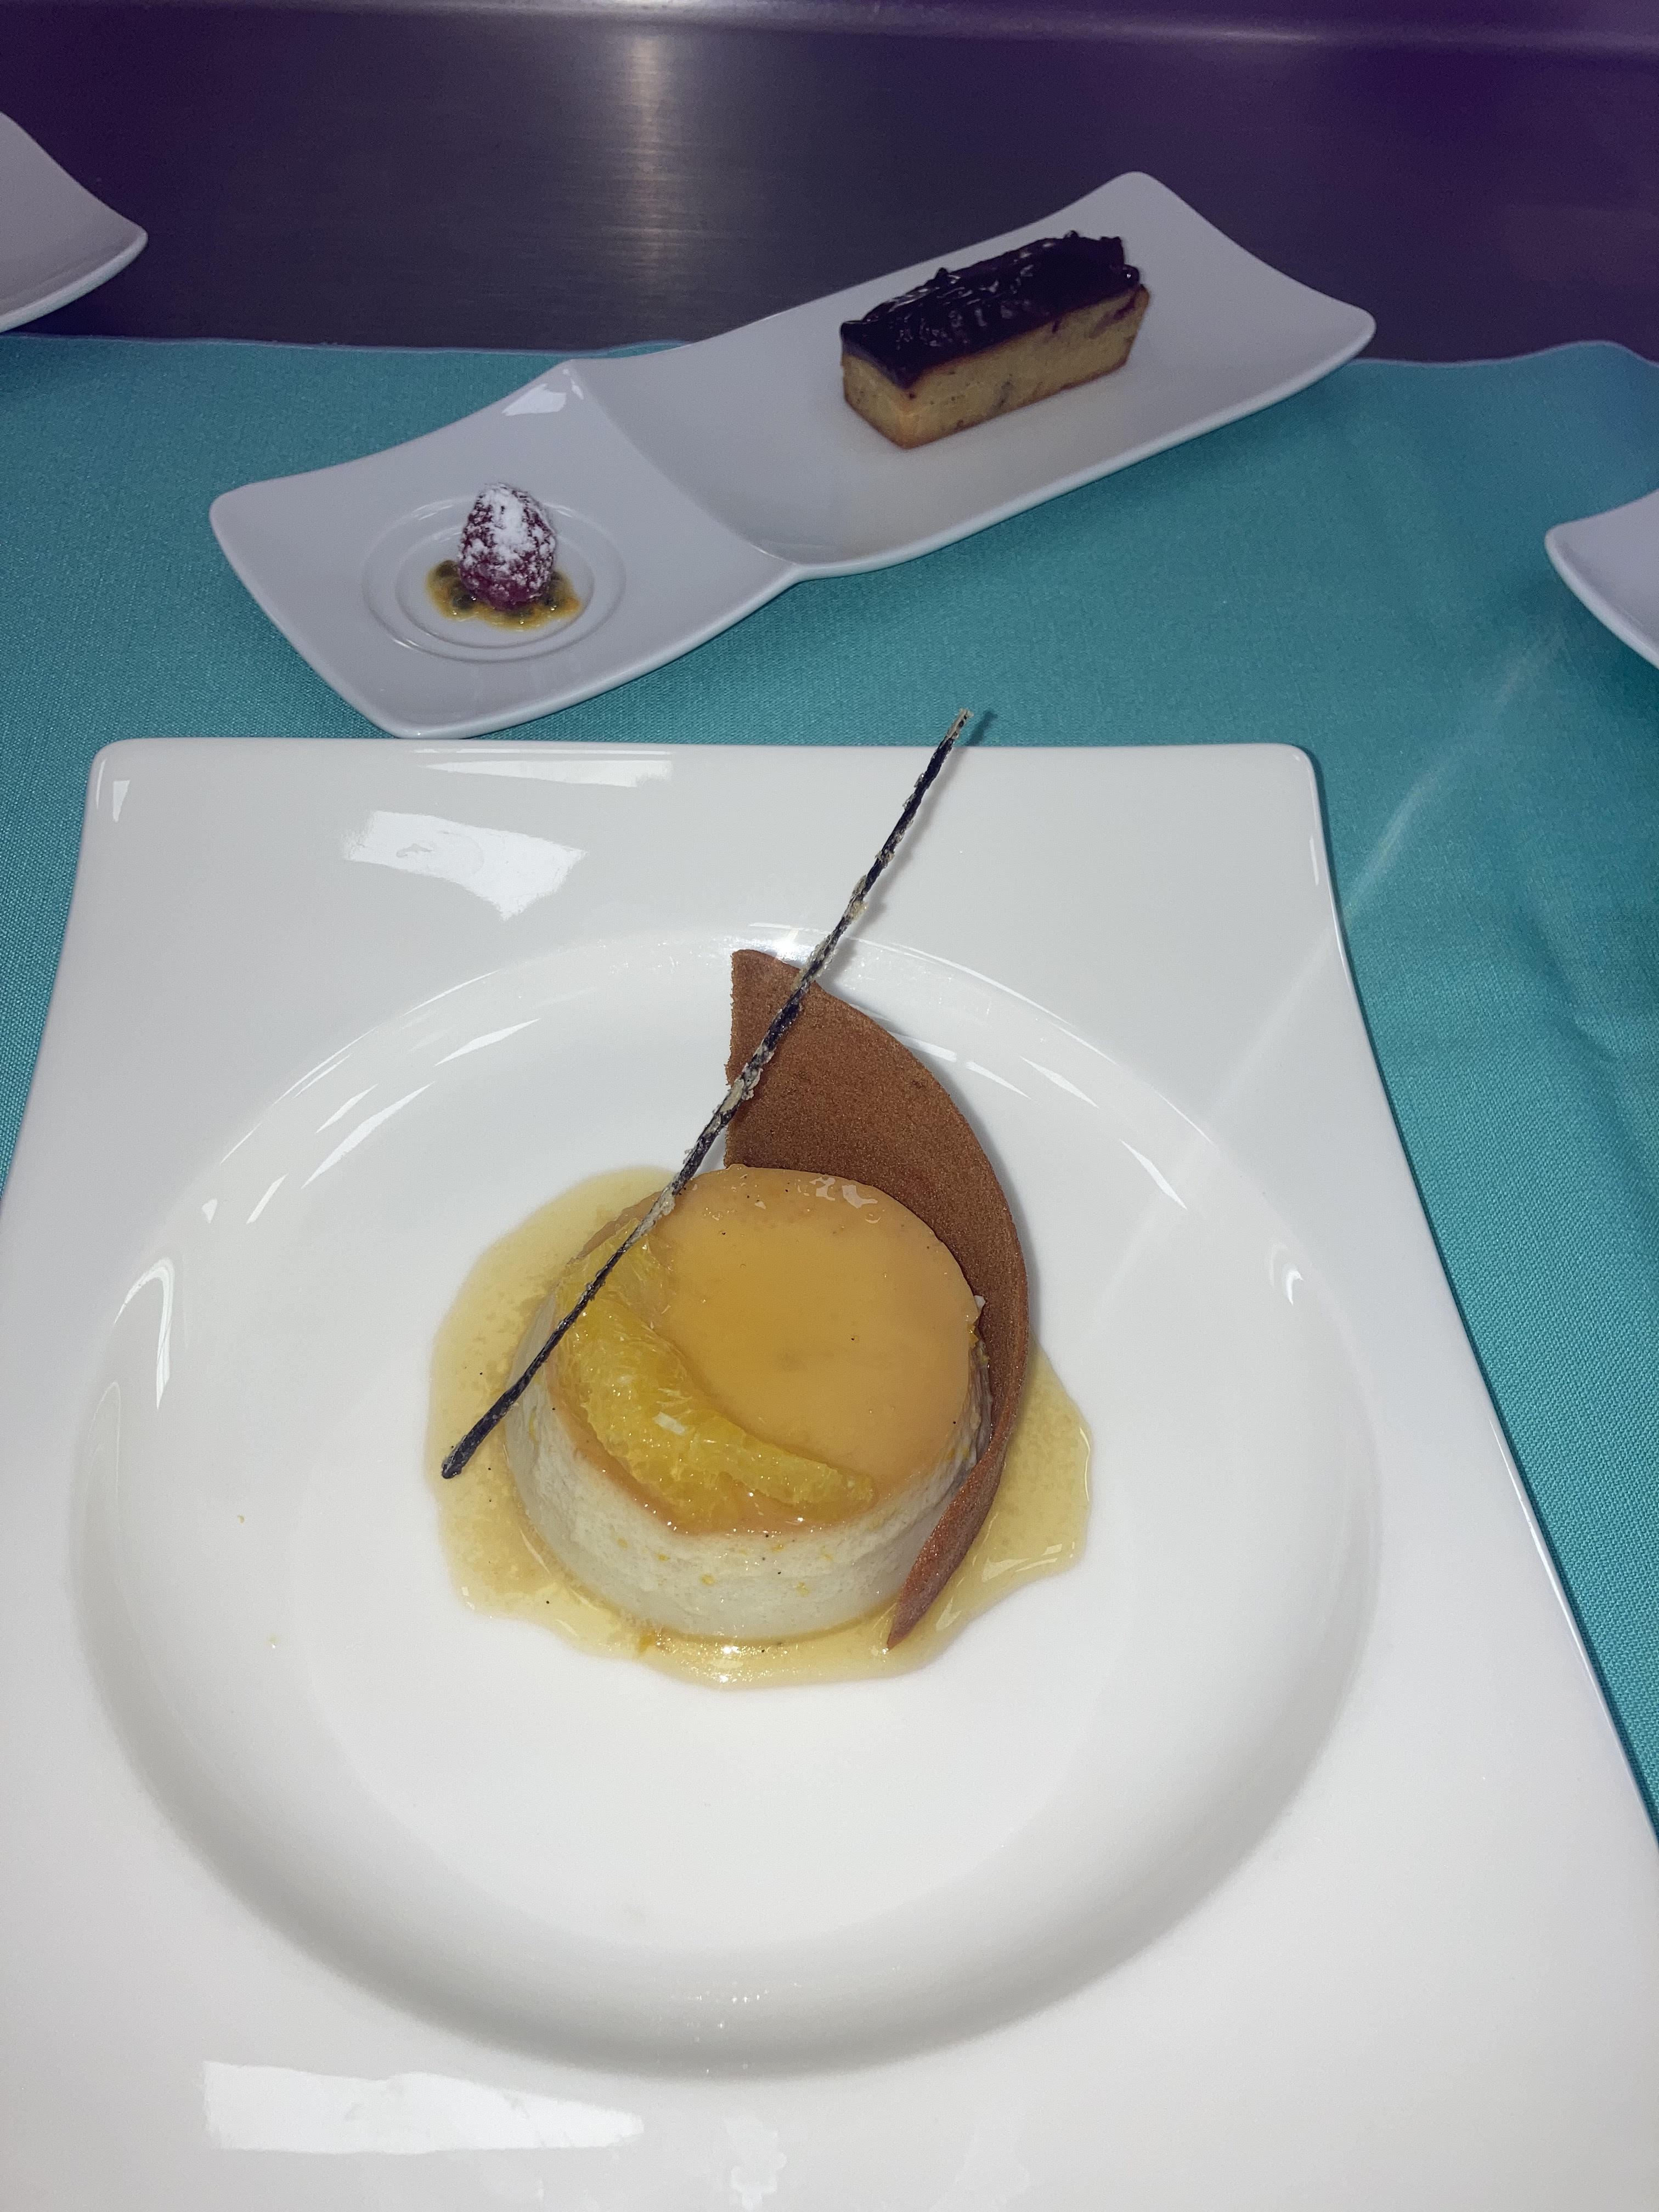 Les deux desserts présentés par le jeune cuisinier : une crème moulée Suzette et un financier passion framboise.